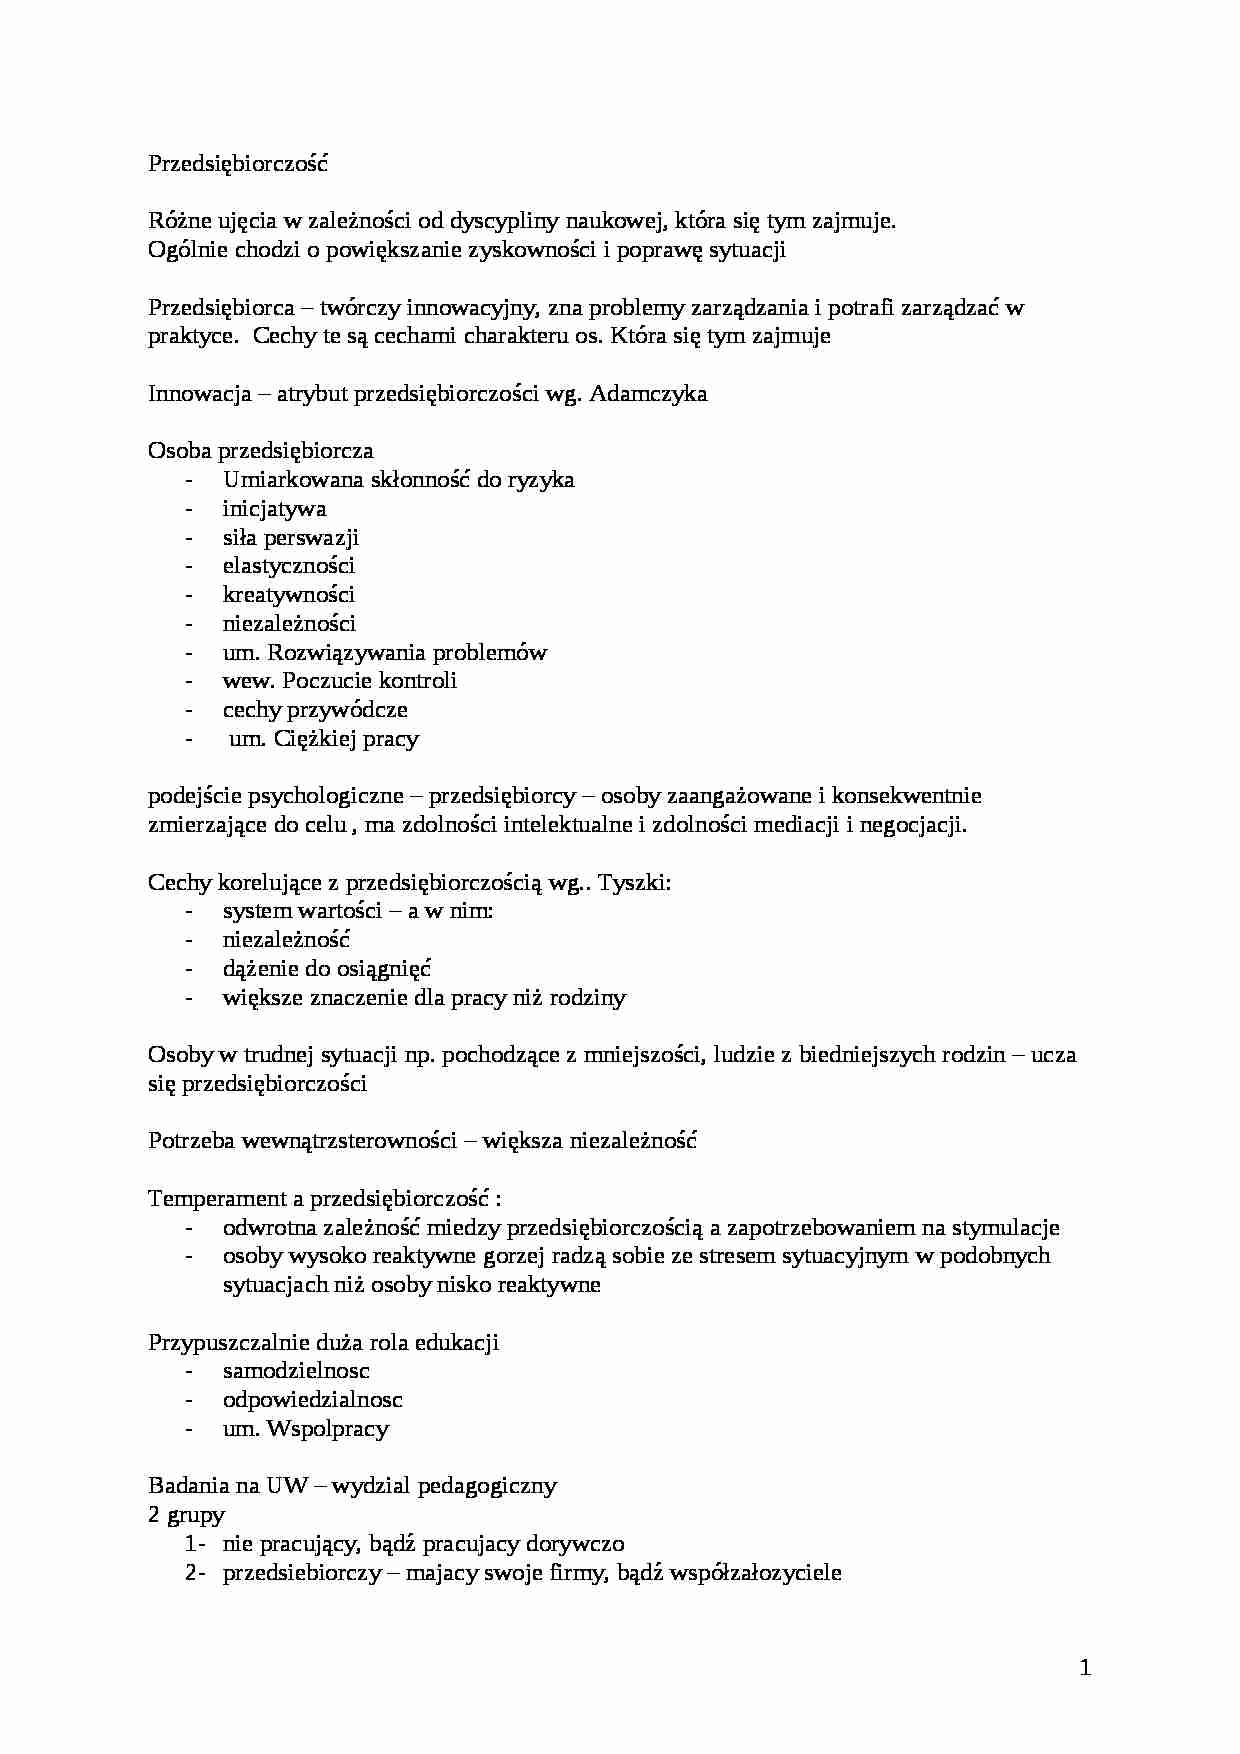 05 - 07 - Psychopedagogika pracy - pedagogika - strona 1